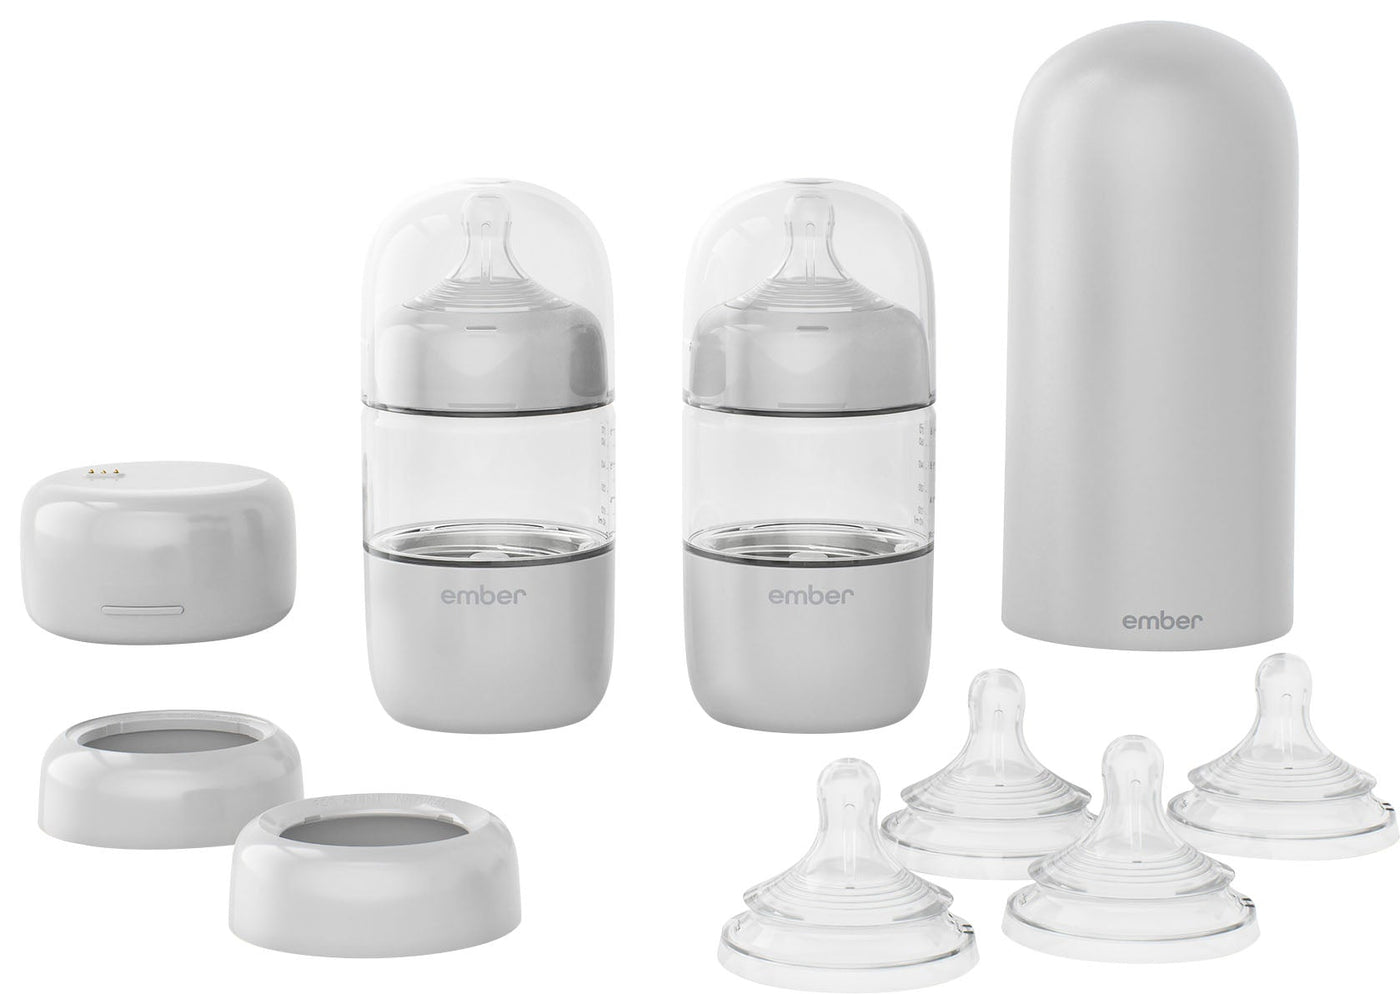 Ember - Baby Bottle System 6 oz Self-Warming Smart Baby Bottle